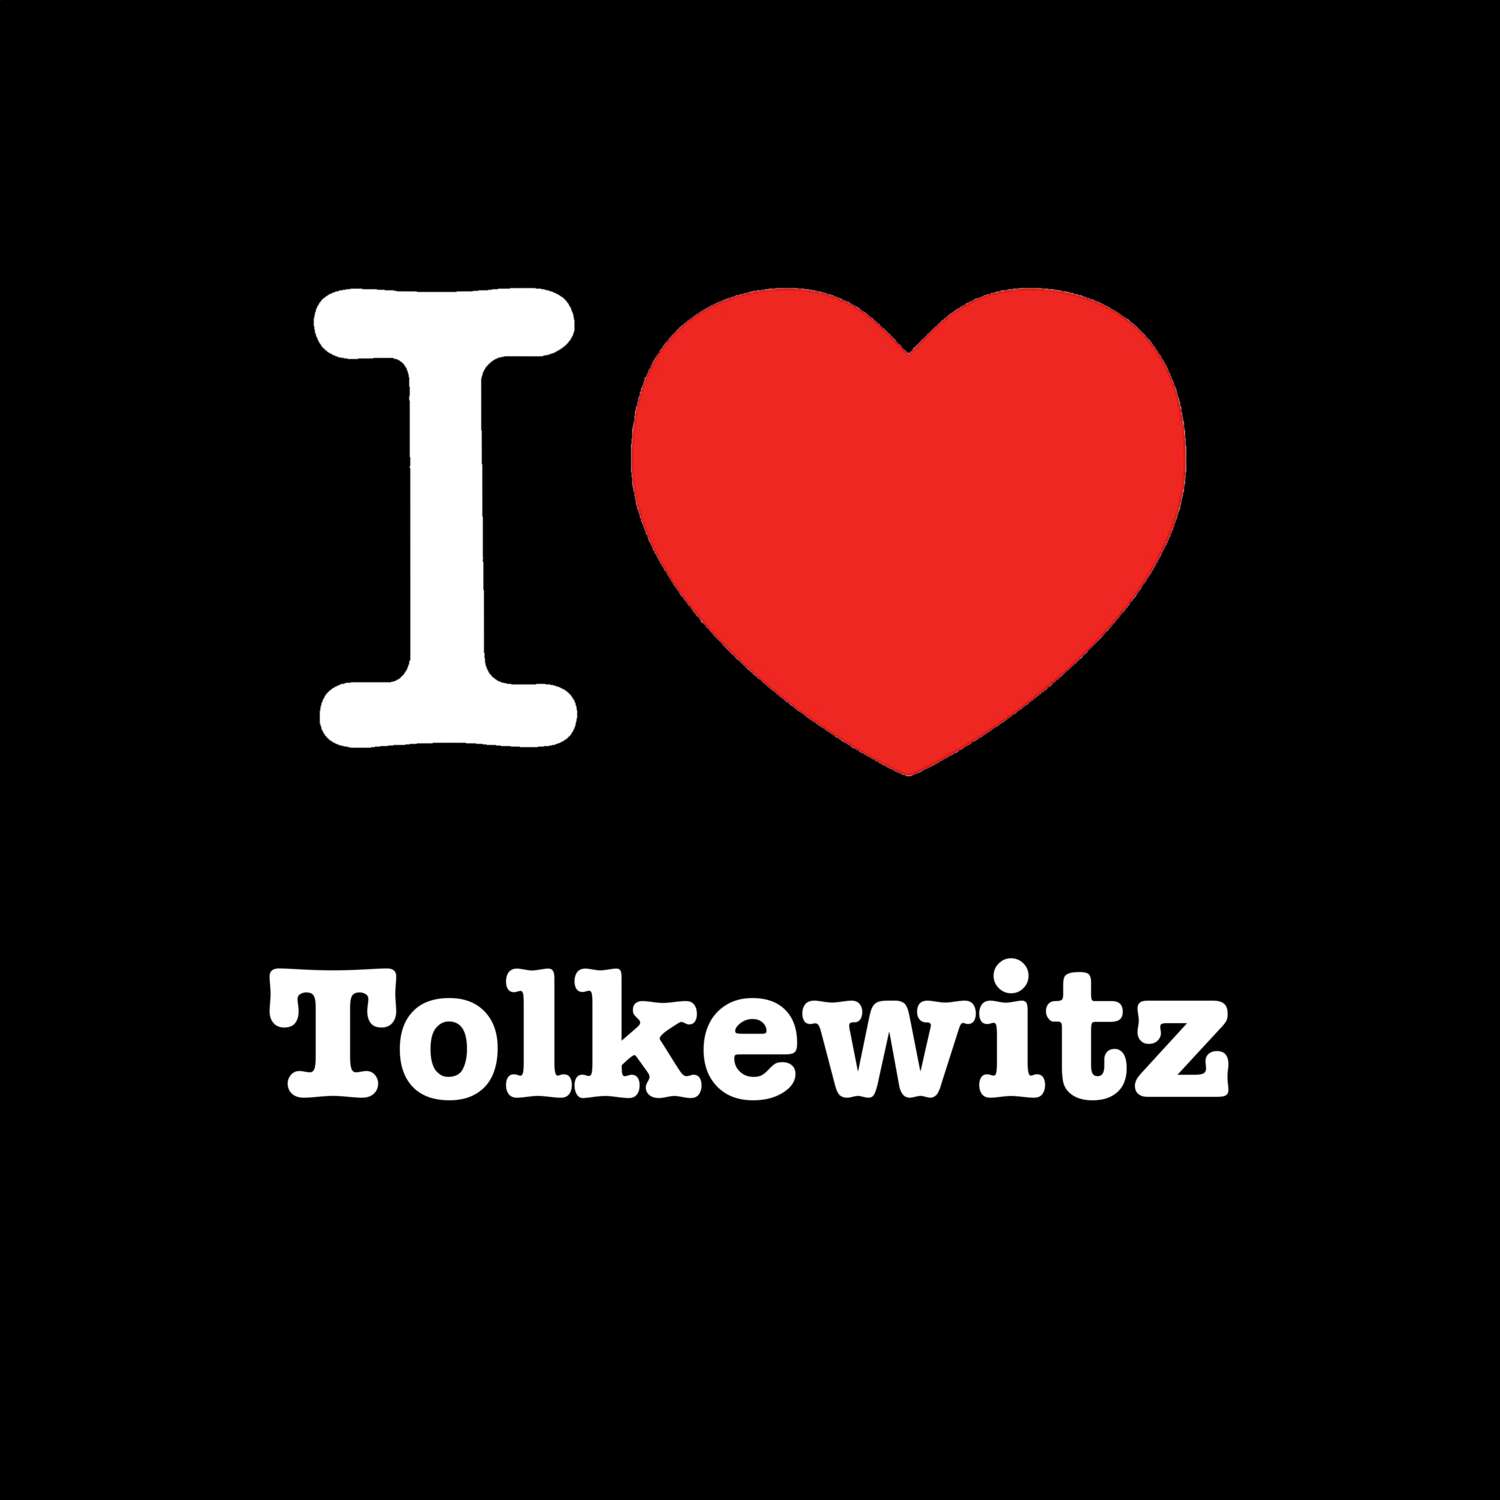 Tolkewitz T-Shirt »I love«